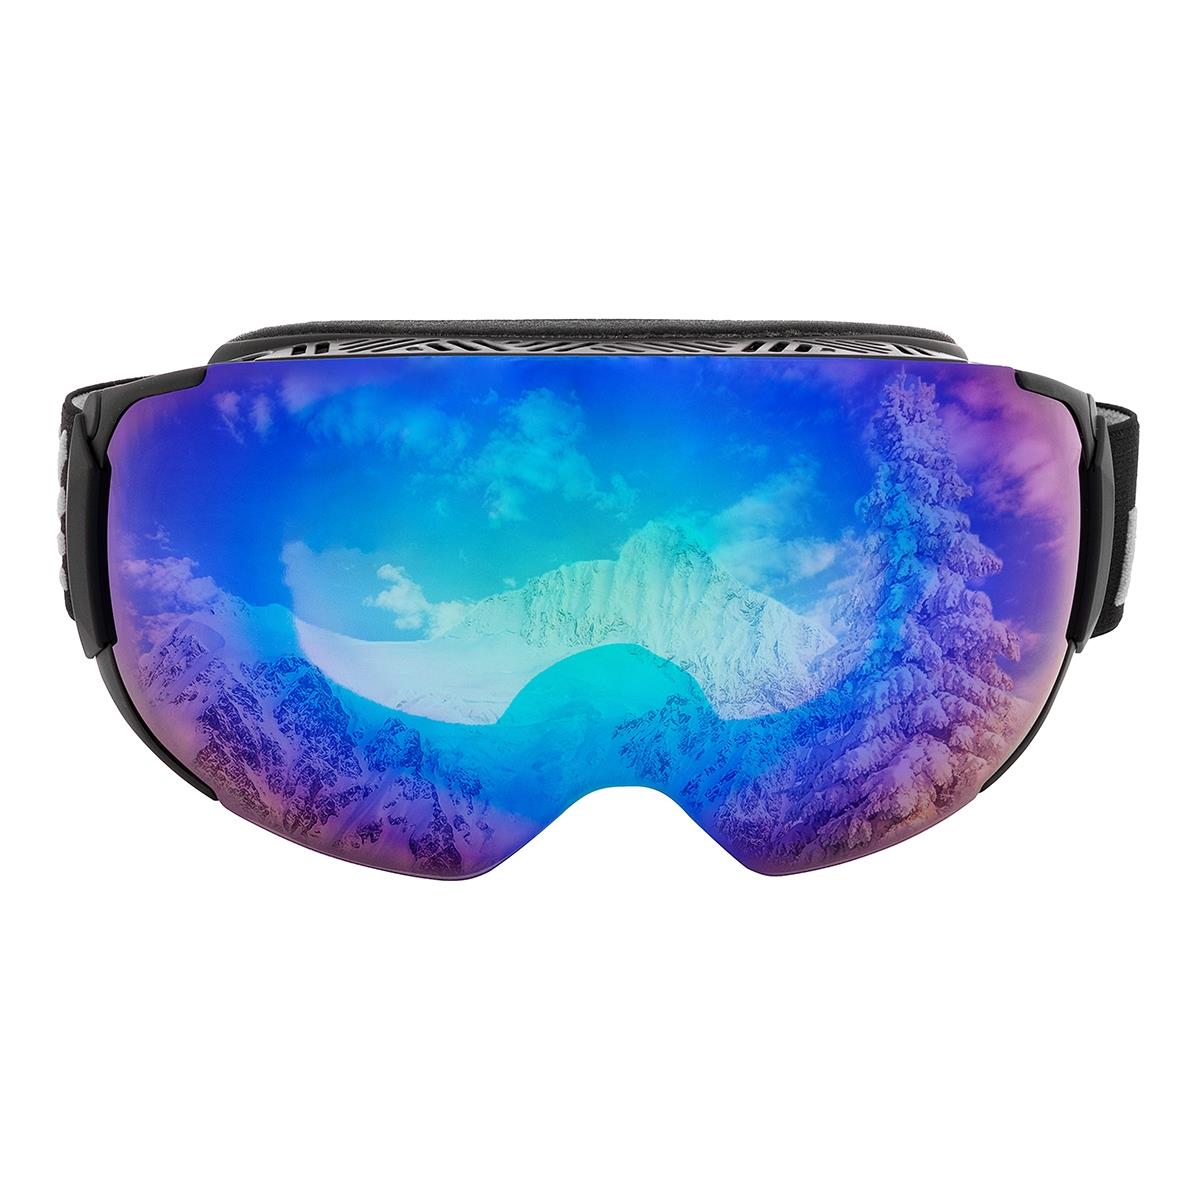 Очки горнолыжные HS-HX-019 Helios очки полумаска для плавания с берушами детские uv защита